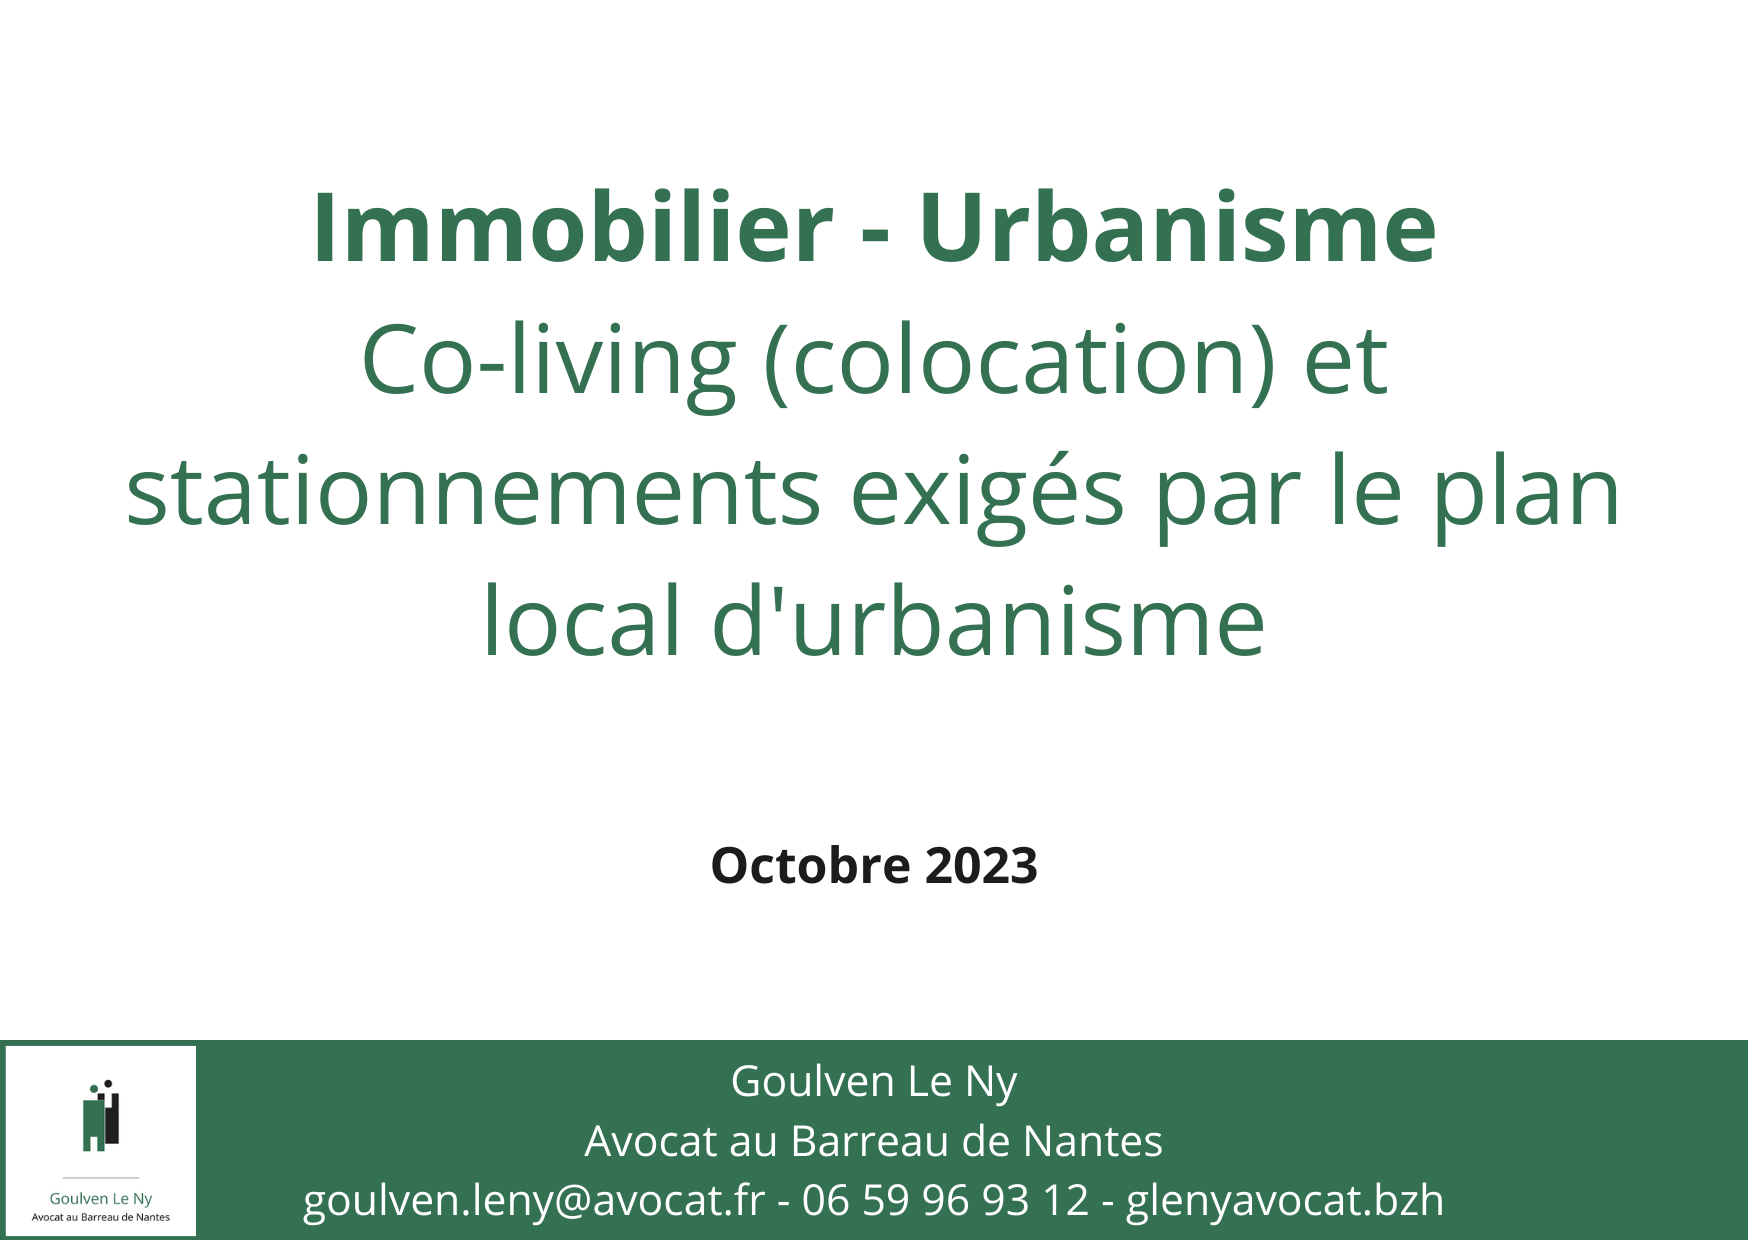 Co-living (colocation) et stationnements exigés par le plan local d'urbanisme